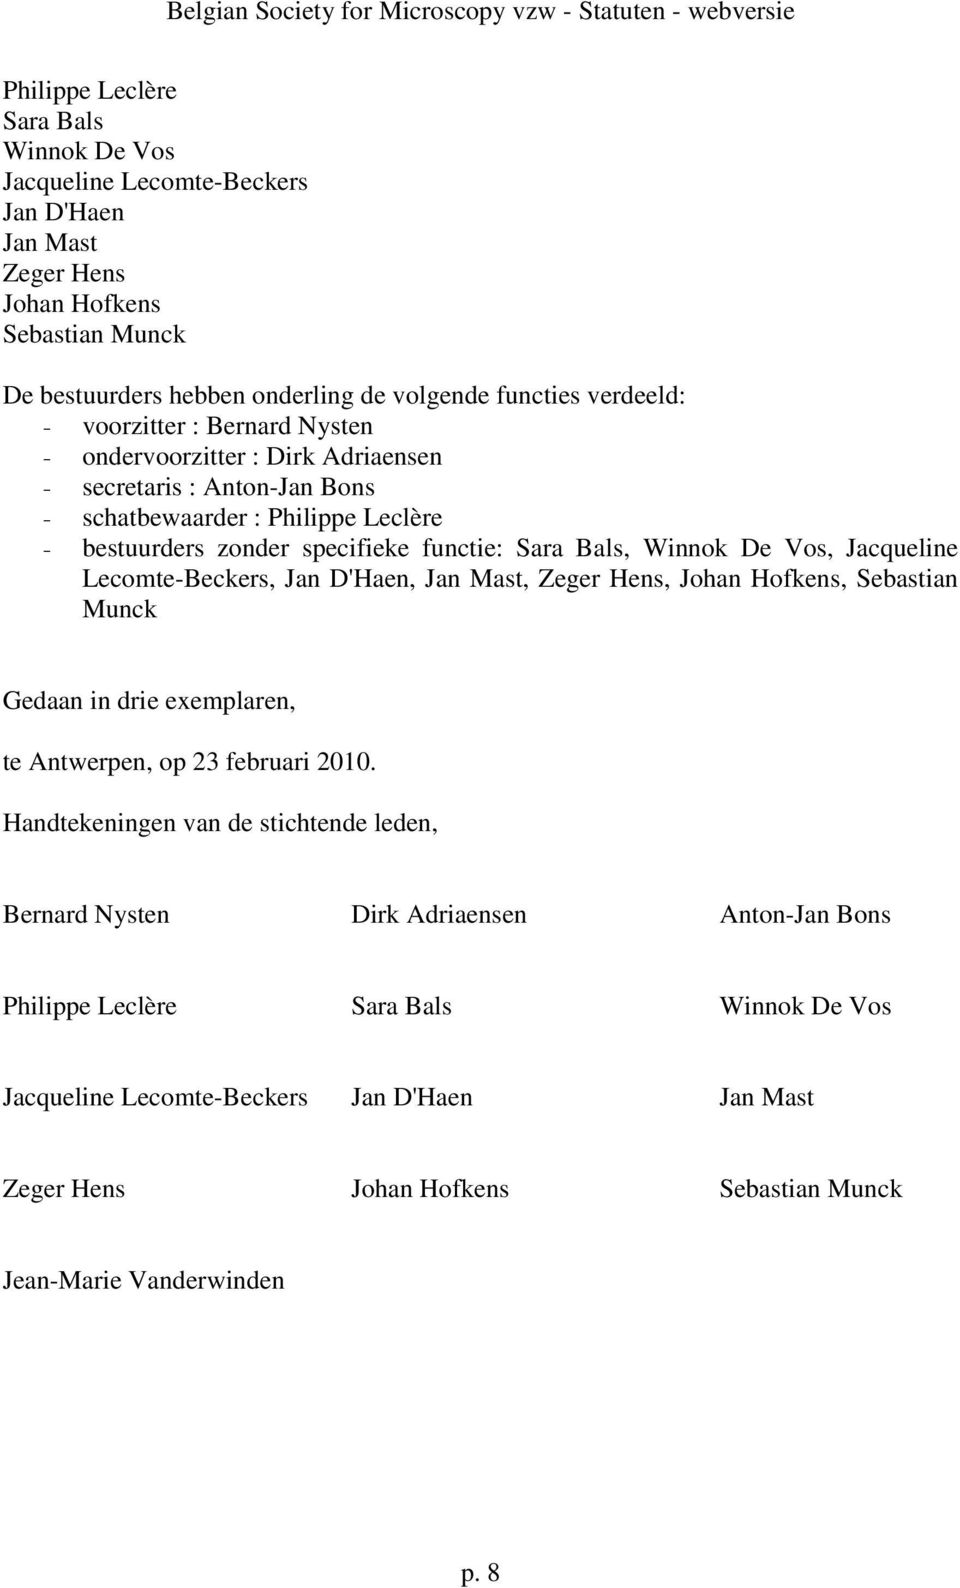 Jacqueline Lecomte-Beckers, Jan D'Haen, Jan Mast, Zeger Hens, Johan Hofkens, Sebastian Munck Gedaan in drie exemplaren, te Antwerpen, op 23 februari 2010.